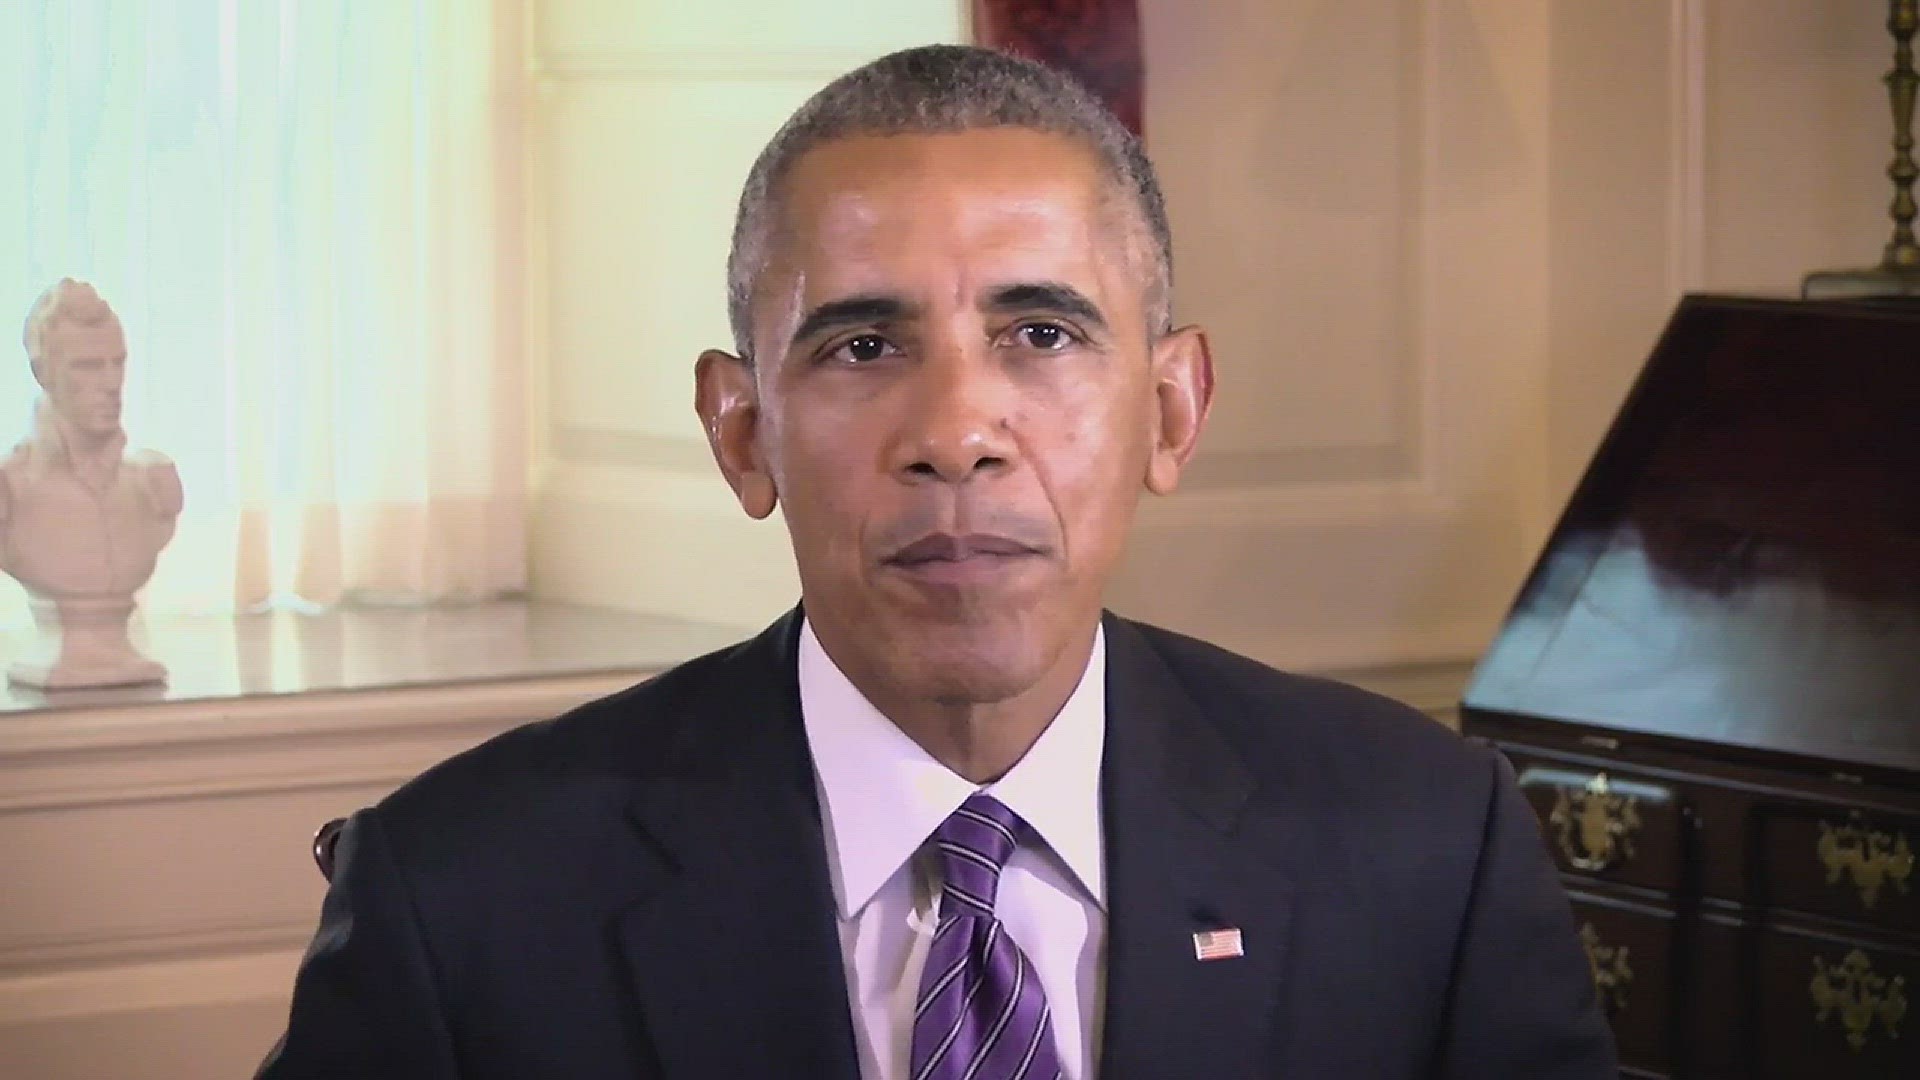 President Obama endorses Gov. Kate Brown